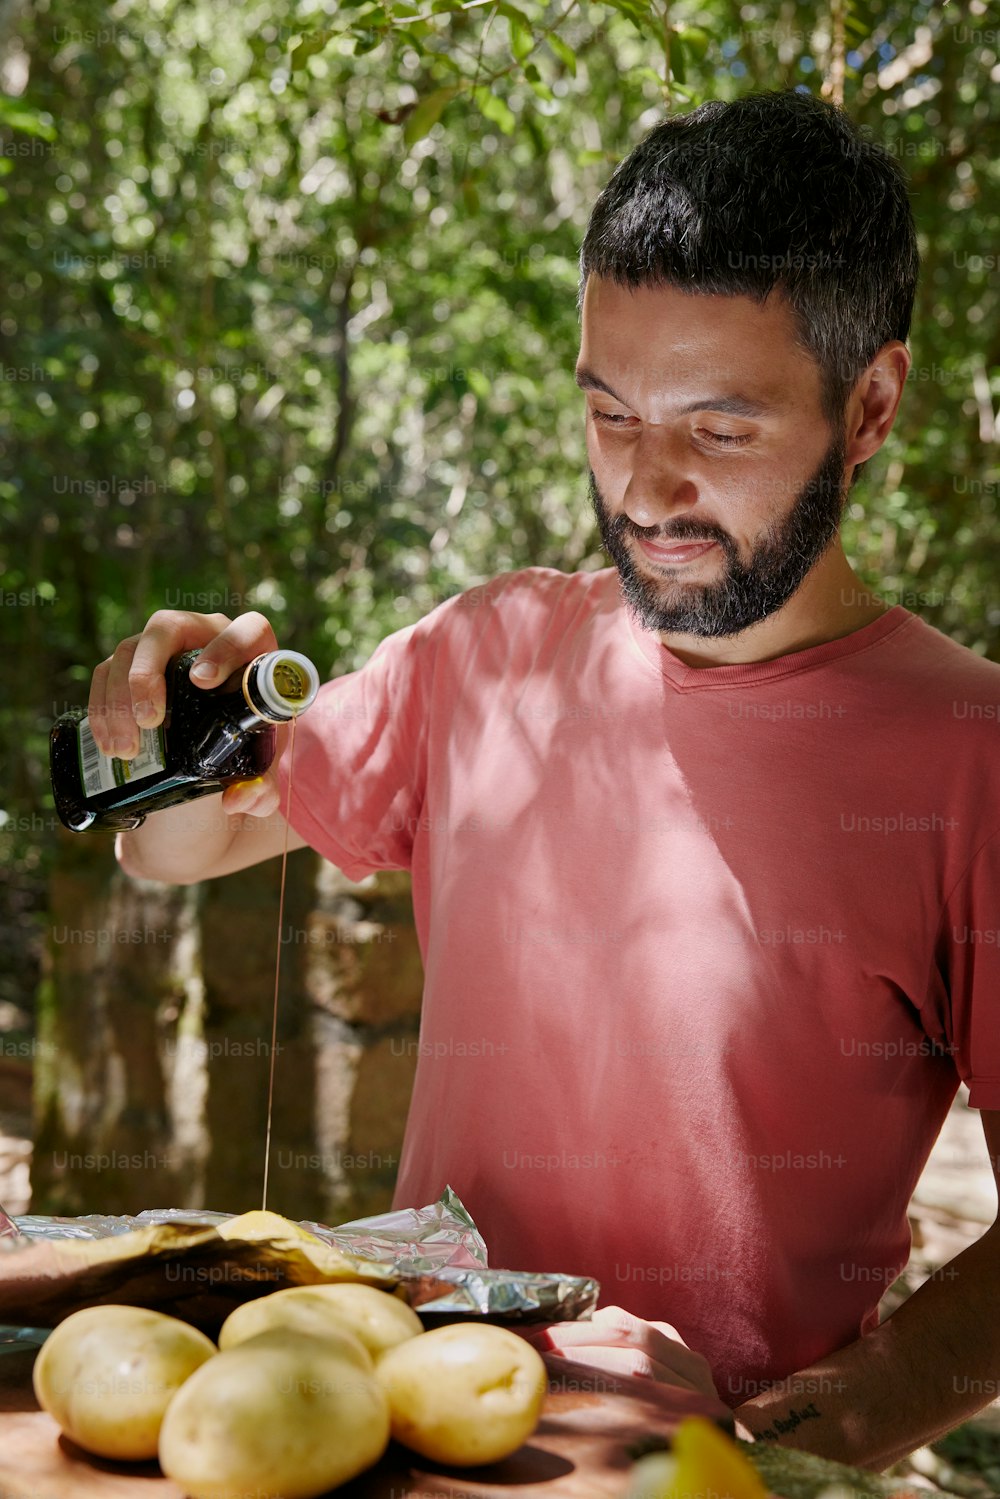 Ein Mann mit Bart gießt etwas in eine Flasche